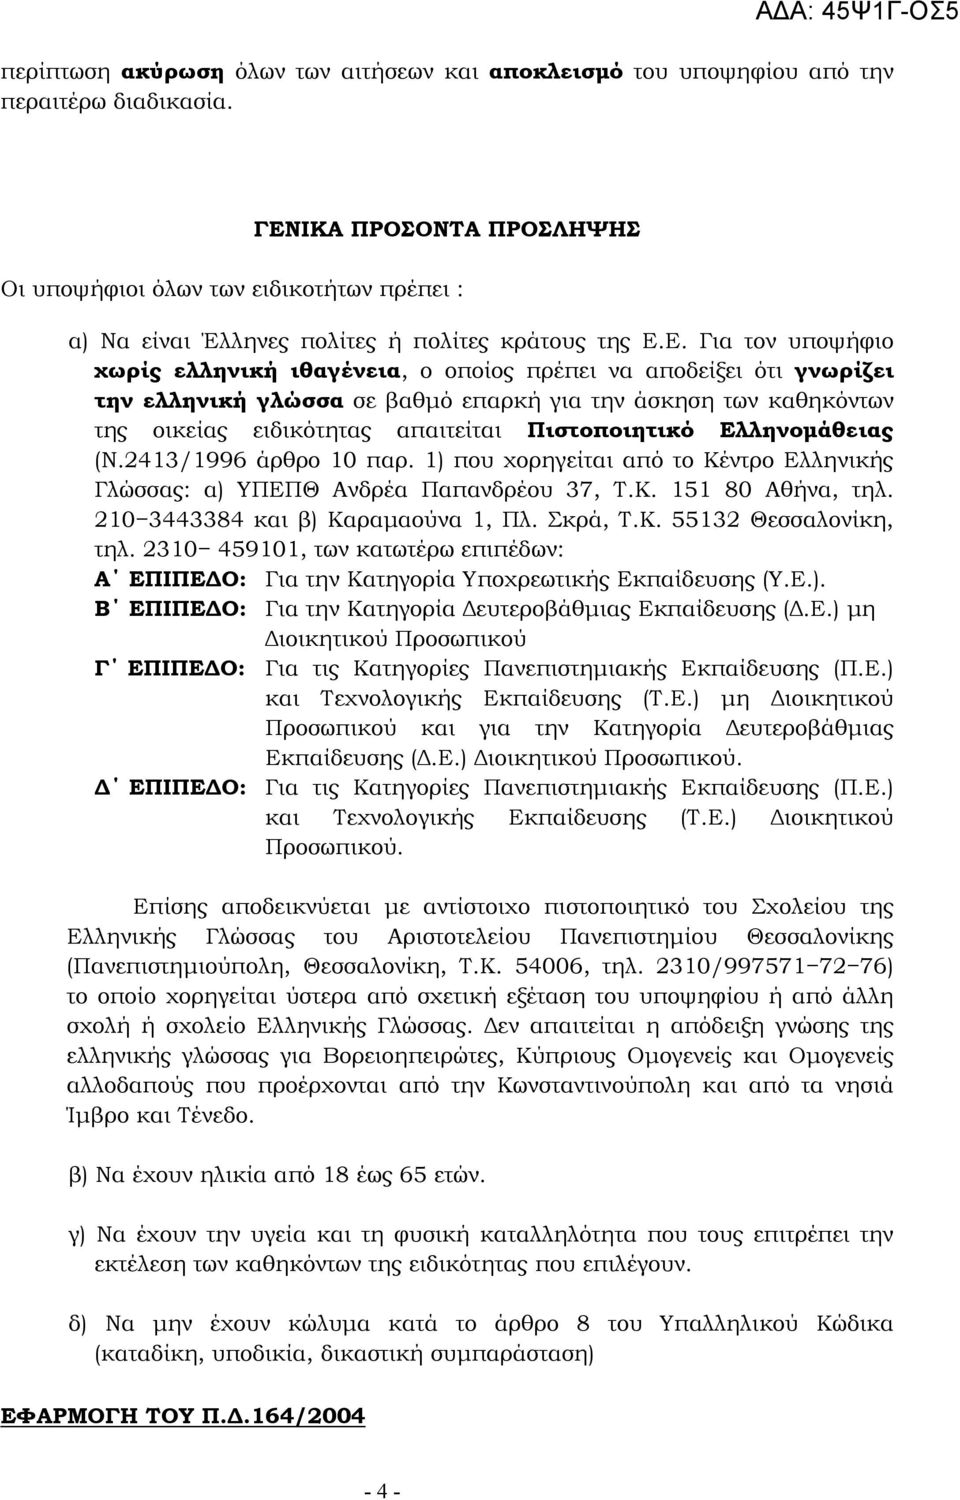 γνωρίζει την ελληνική γλώσσα σε βαθµό επαρκή για την άσκηση των καθηκόντων της οικείας ειδικότητας απαιτείται Πιστοποιητικό Ελληνοµάθειας (N.2413/1996 άρθρο 10 παρ.